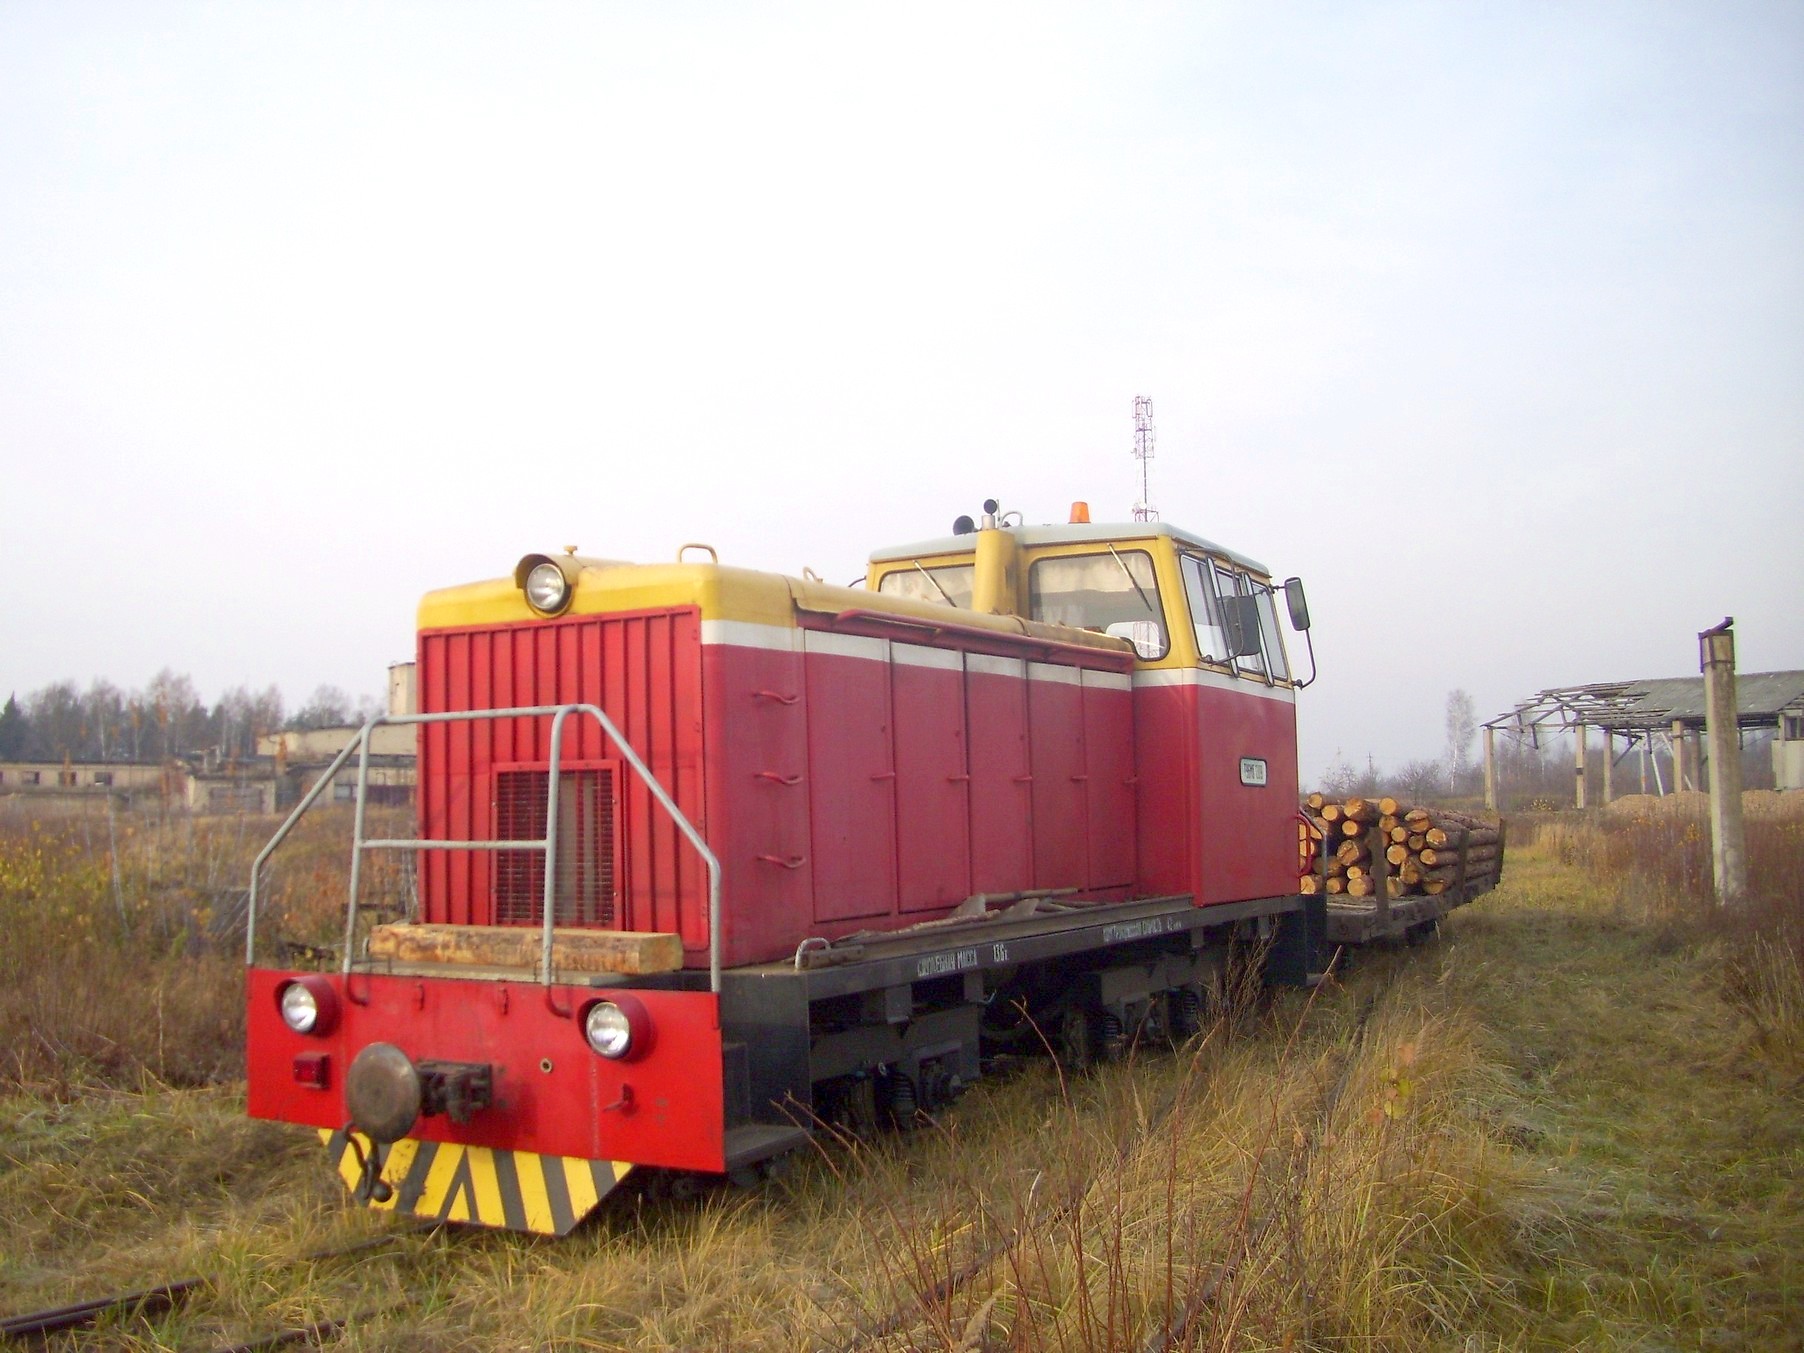 Узкоколейная железная дорога торфопредприятия «Татарка» — фотографии, сделанные в 2011 году (часть 4)